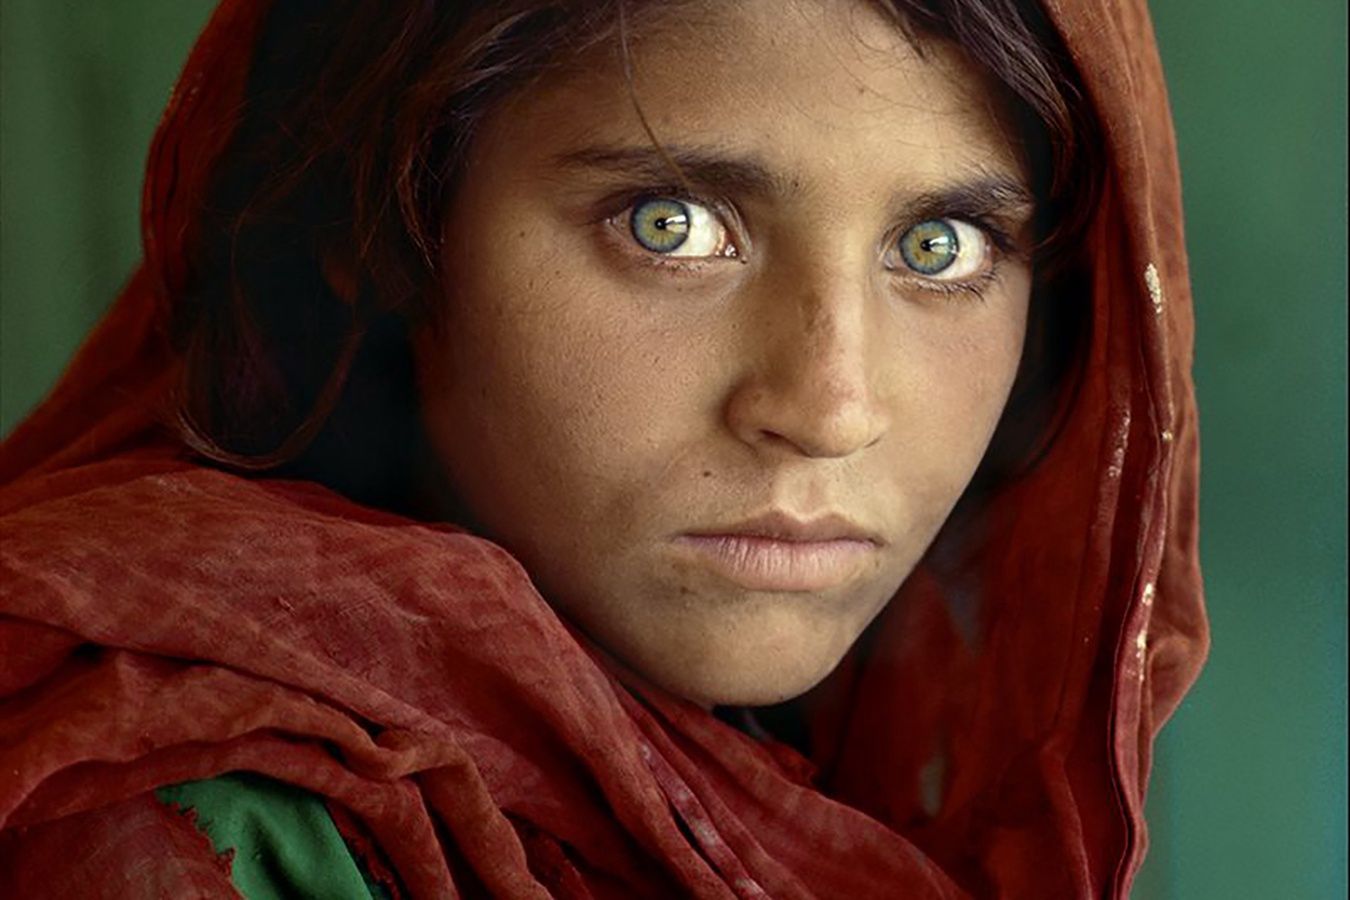 Stała się symbolem. "Afgańska dziewczyna" po latach dostała azyl w Europie